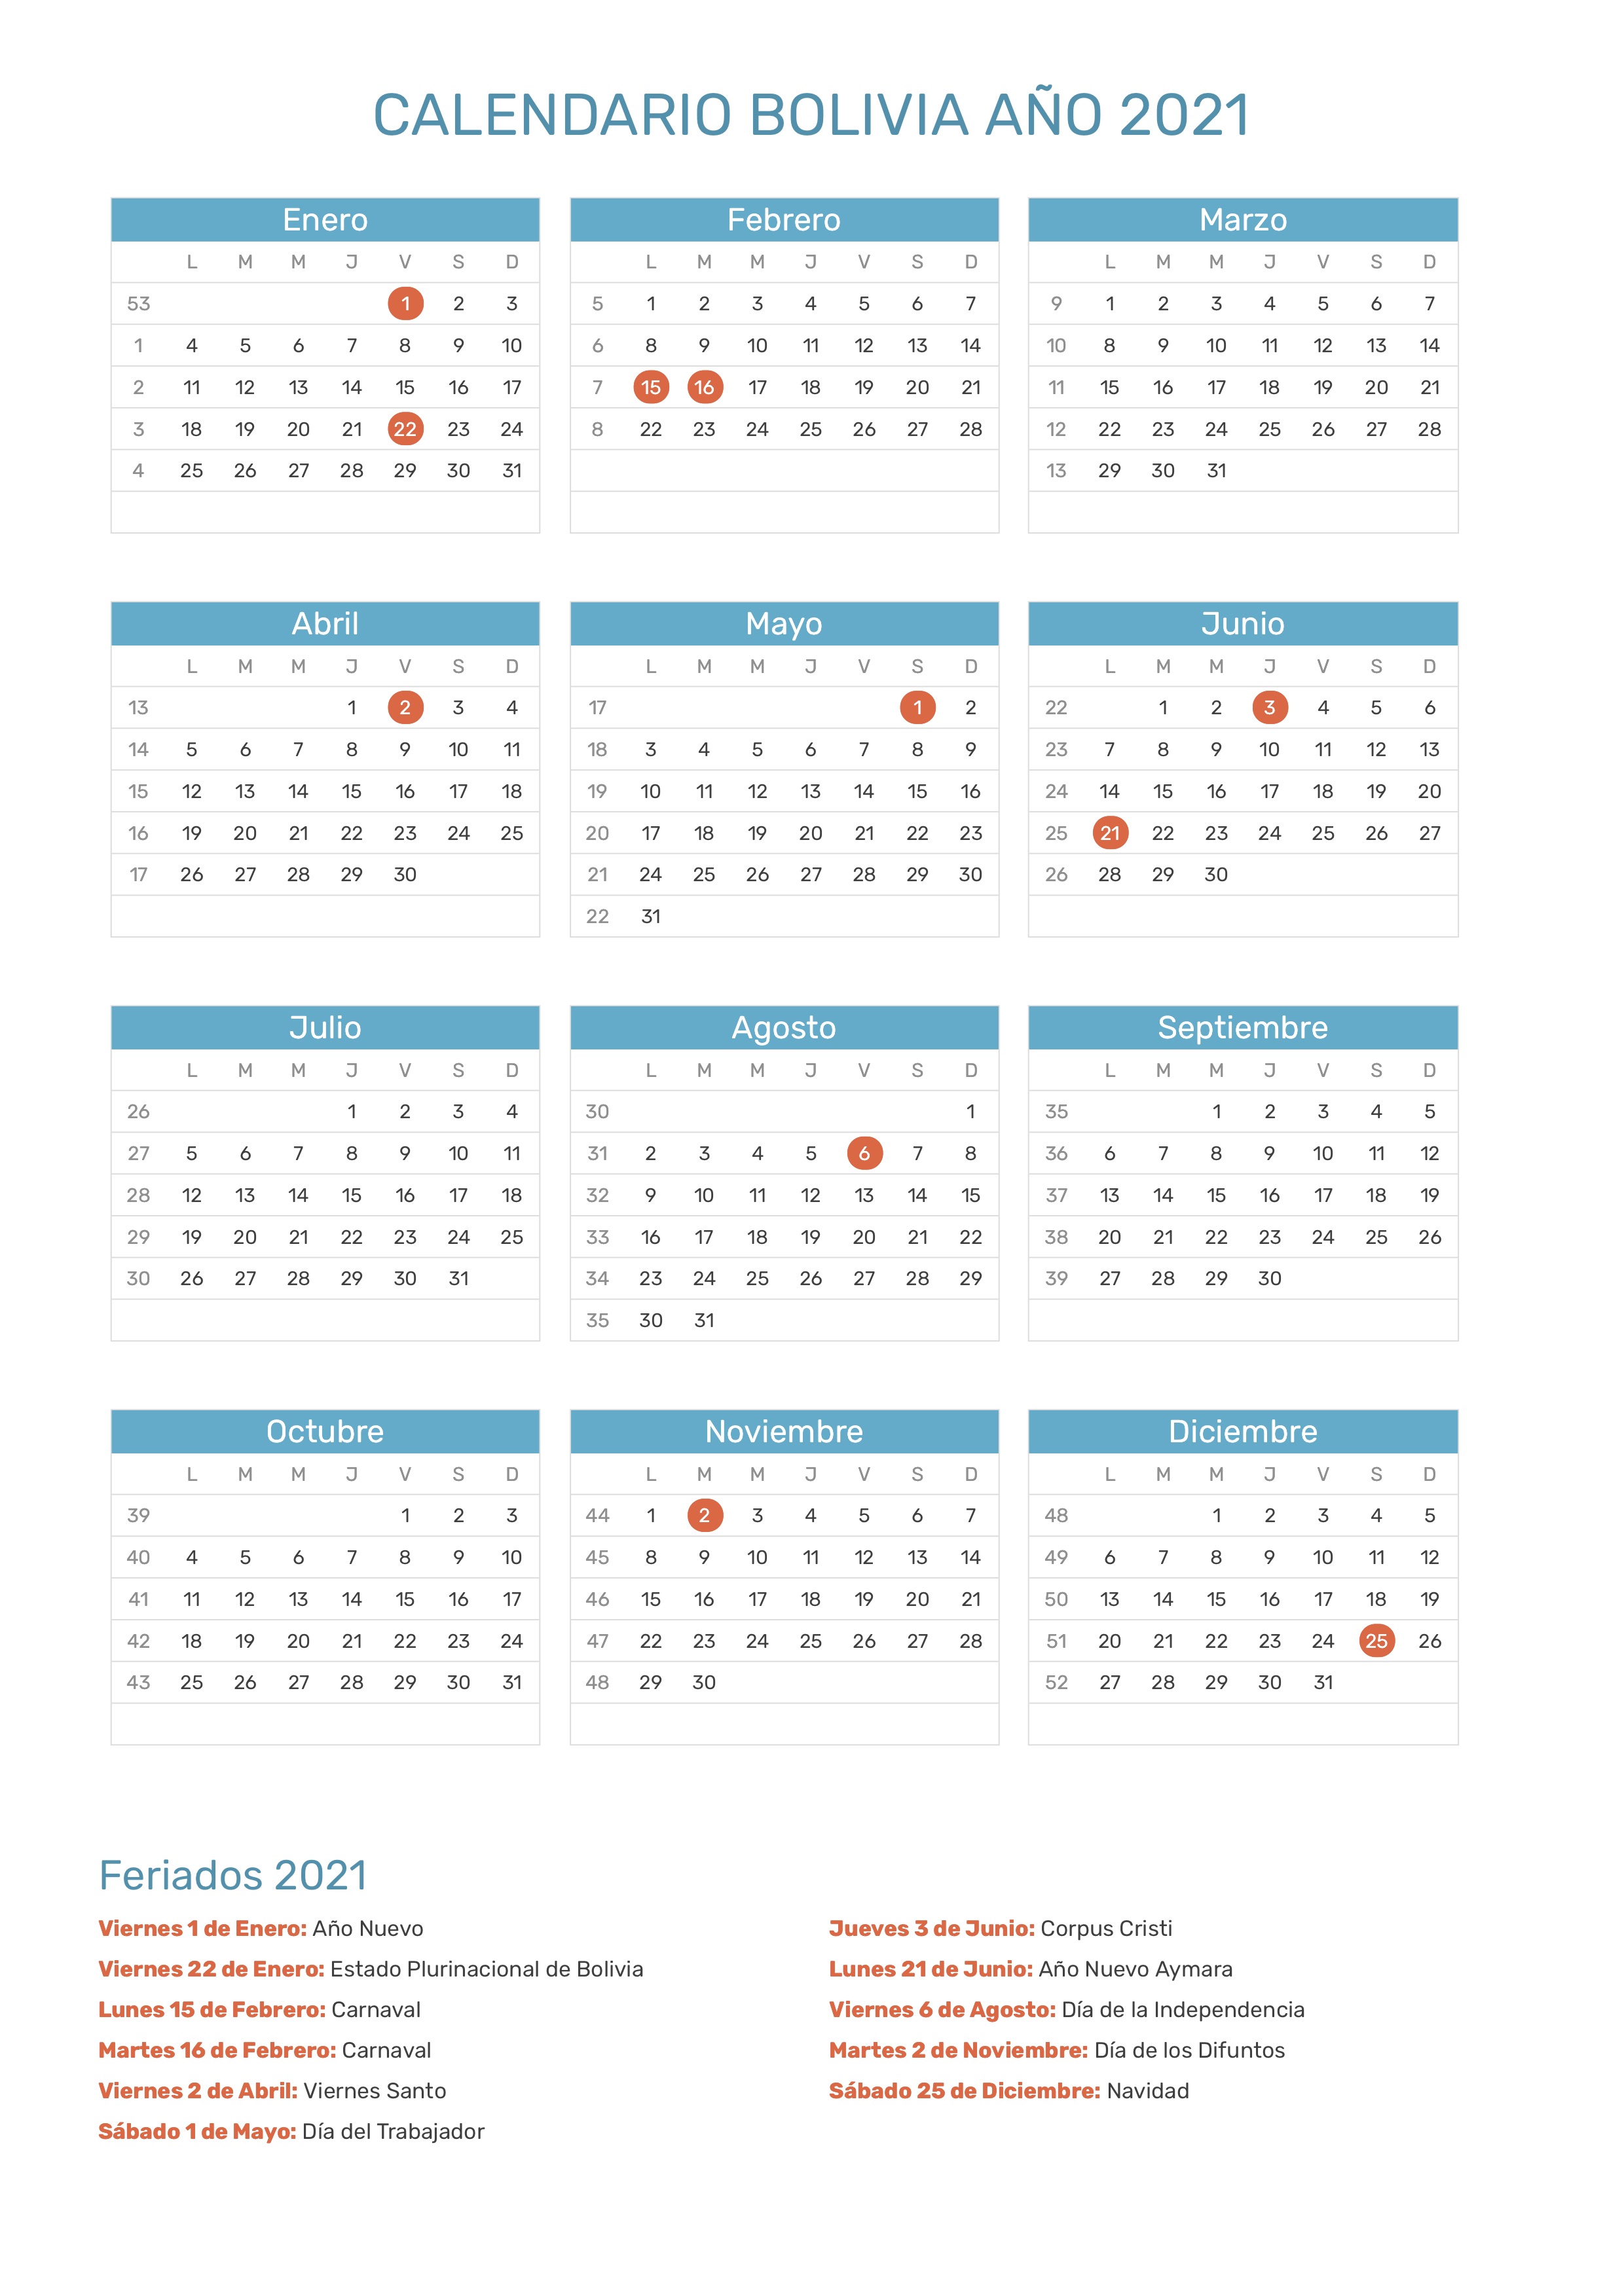 Calendario de Bolivia año 2021 | Feriados